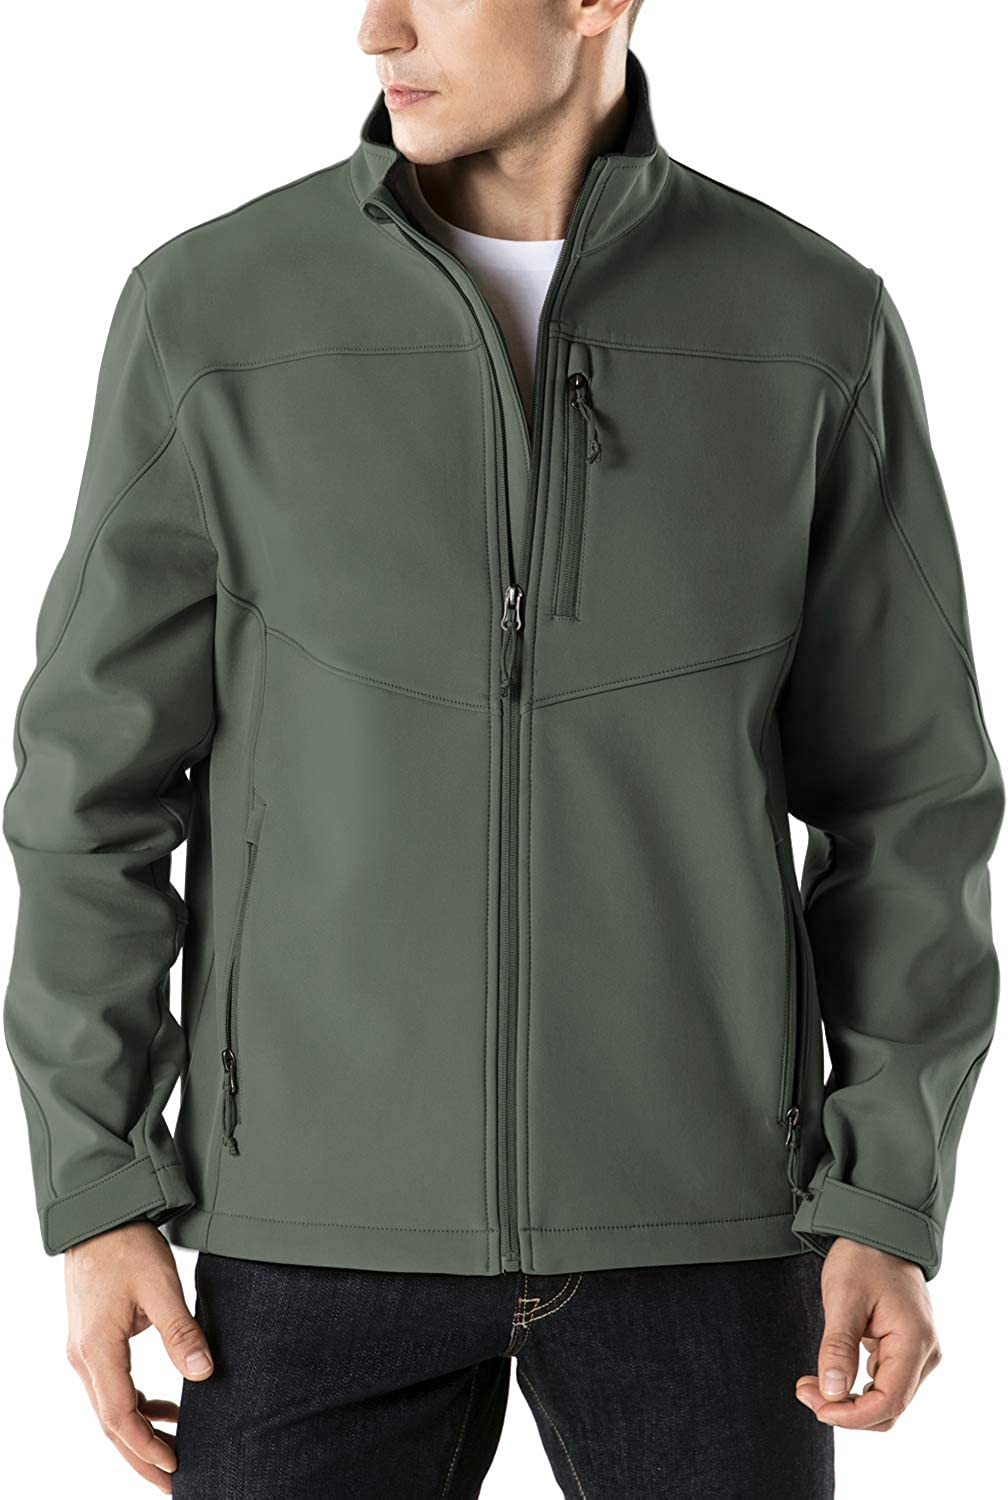 TSLA Mens Full-Zip Softshell Winter Jacket Outdoor Sport Windproof Jackets Waterproof Fleece Lined Athletic Jacket 